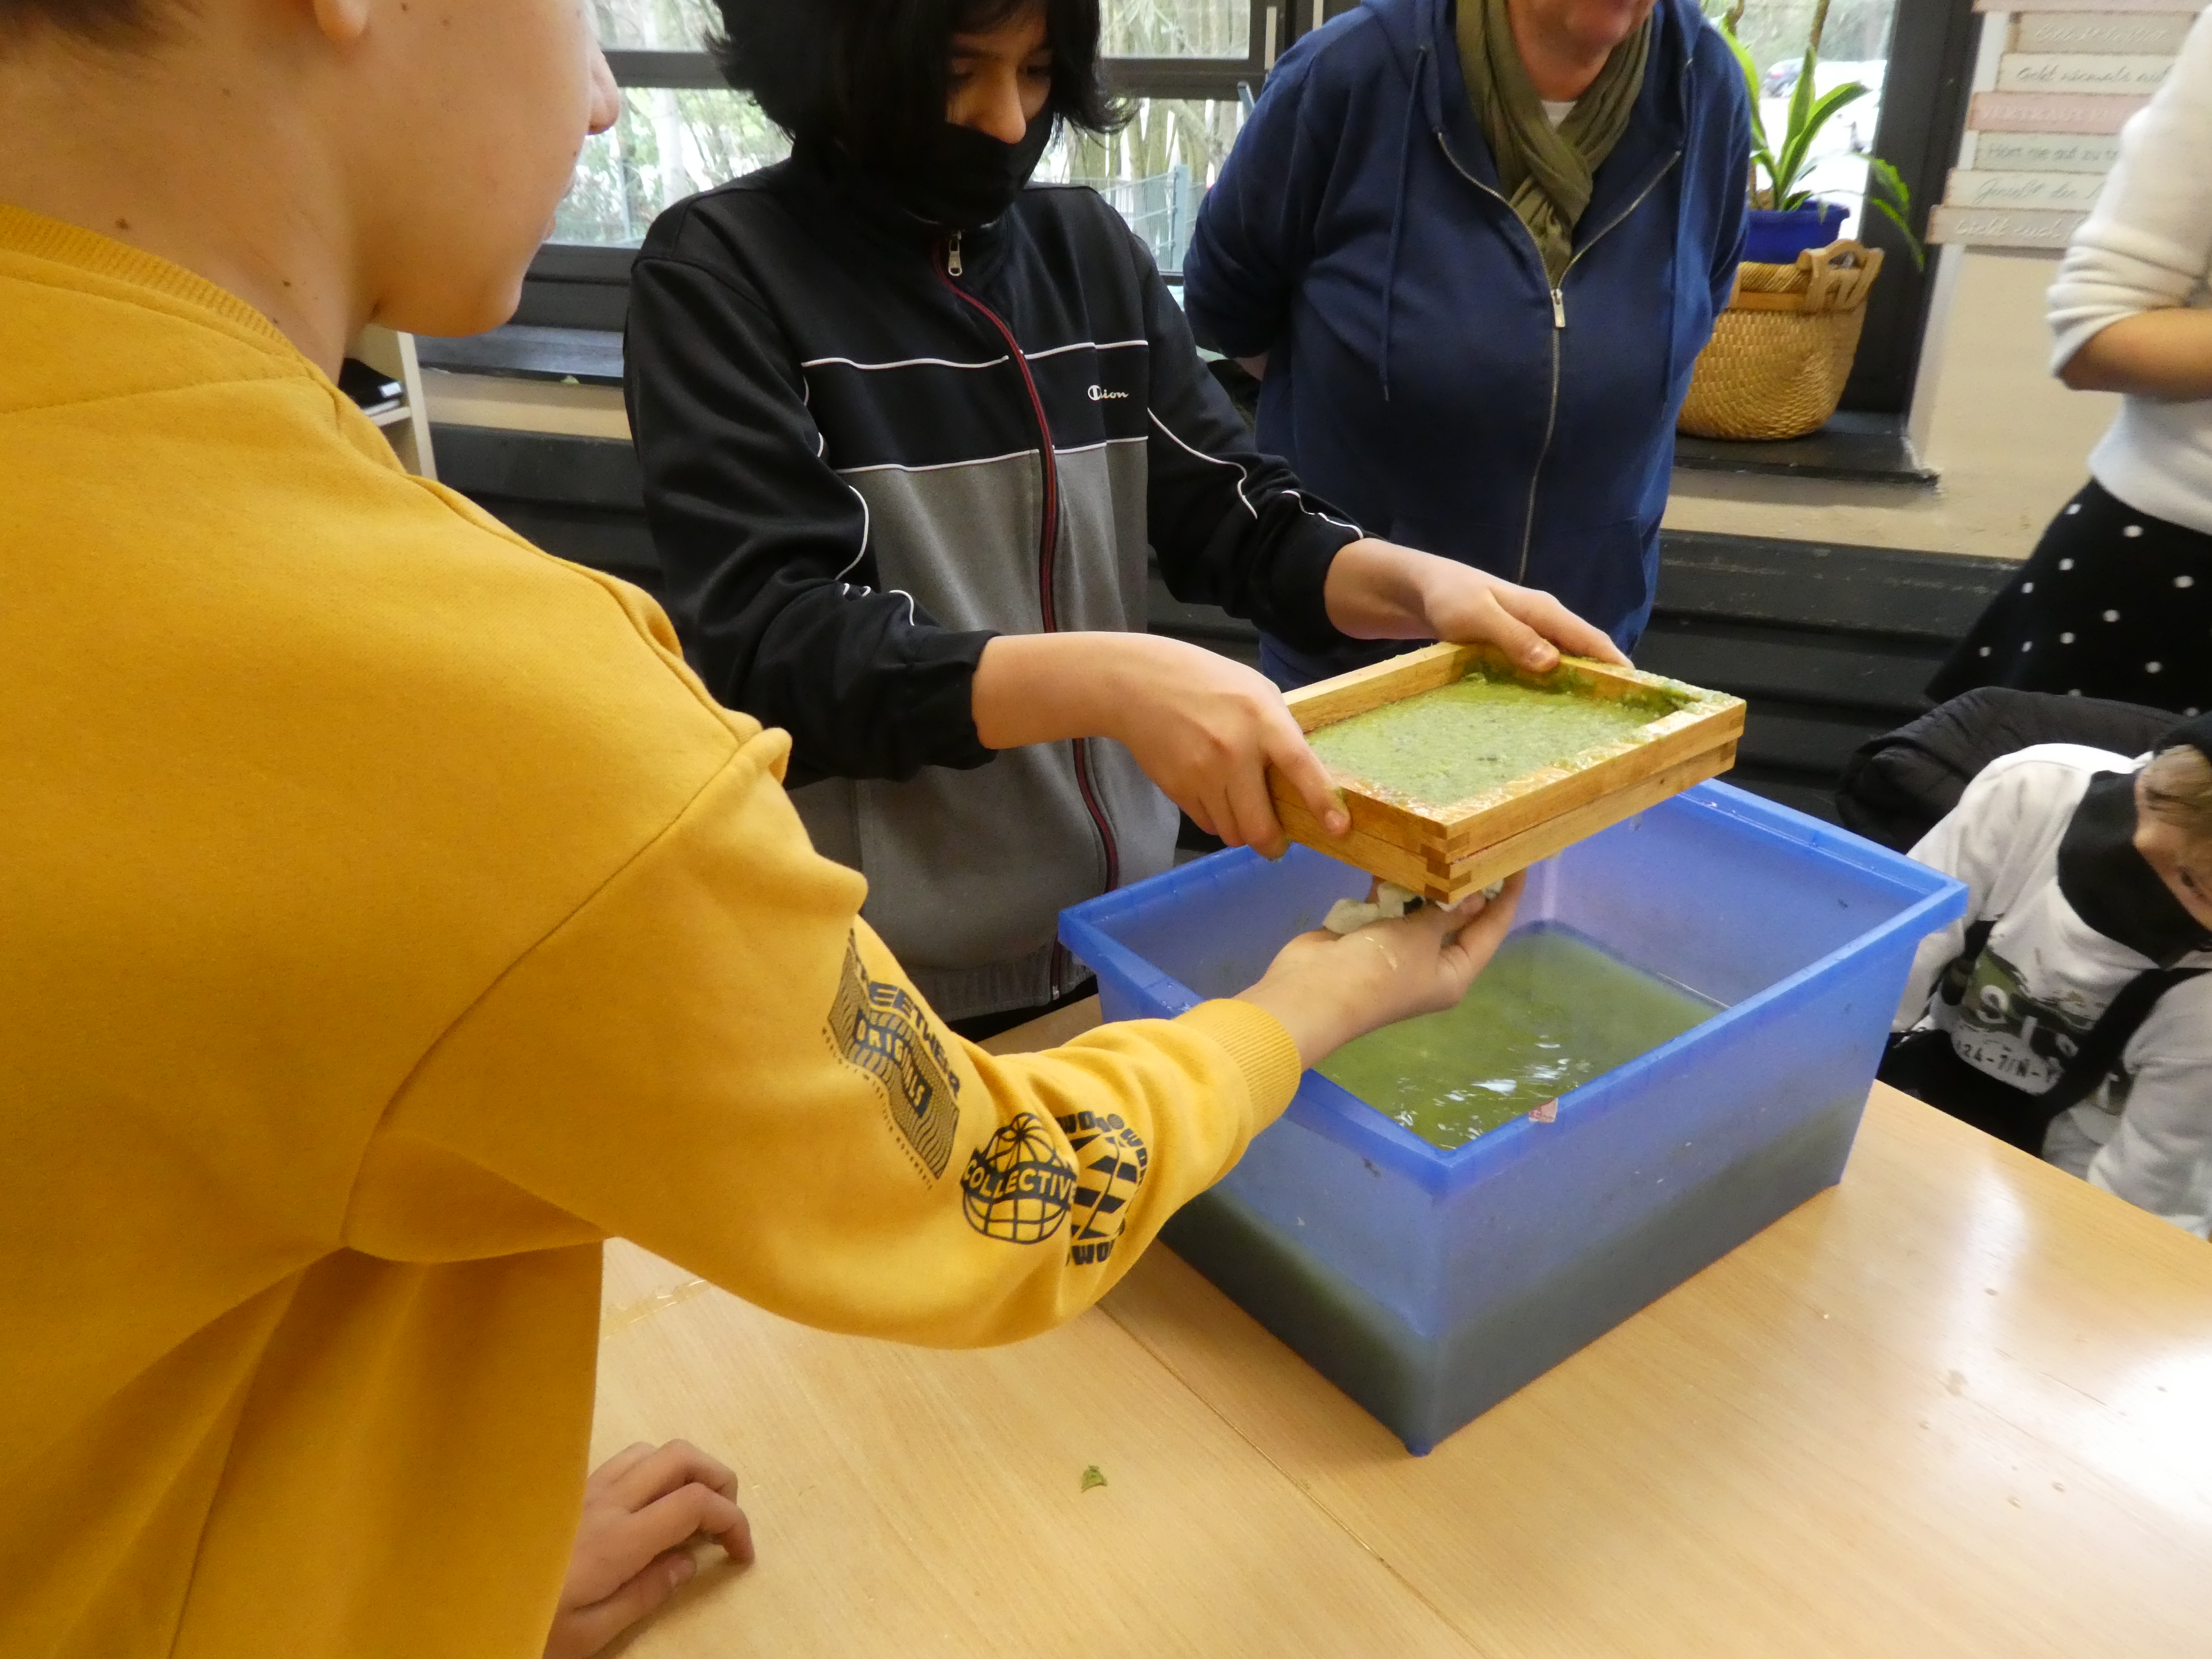 Ein Schüler hat mit einem Rahmen aus einer Wanne eine grünliche Papiermasse geschöpft. Sein Mitschüler tupft mit einem Tuch  überschüssiges Wasser vom Rahmen.